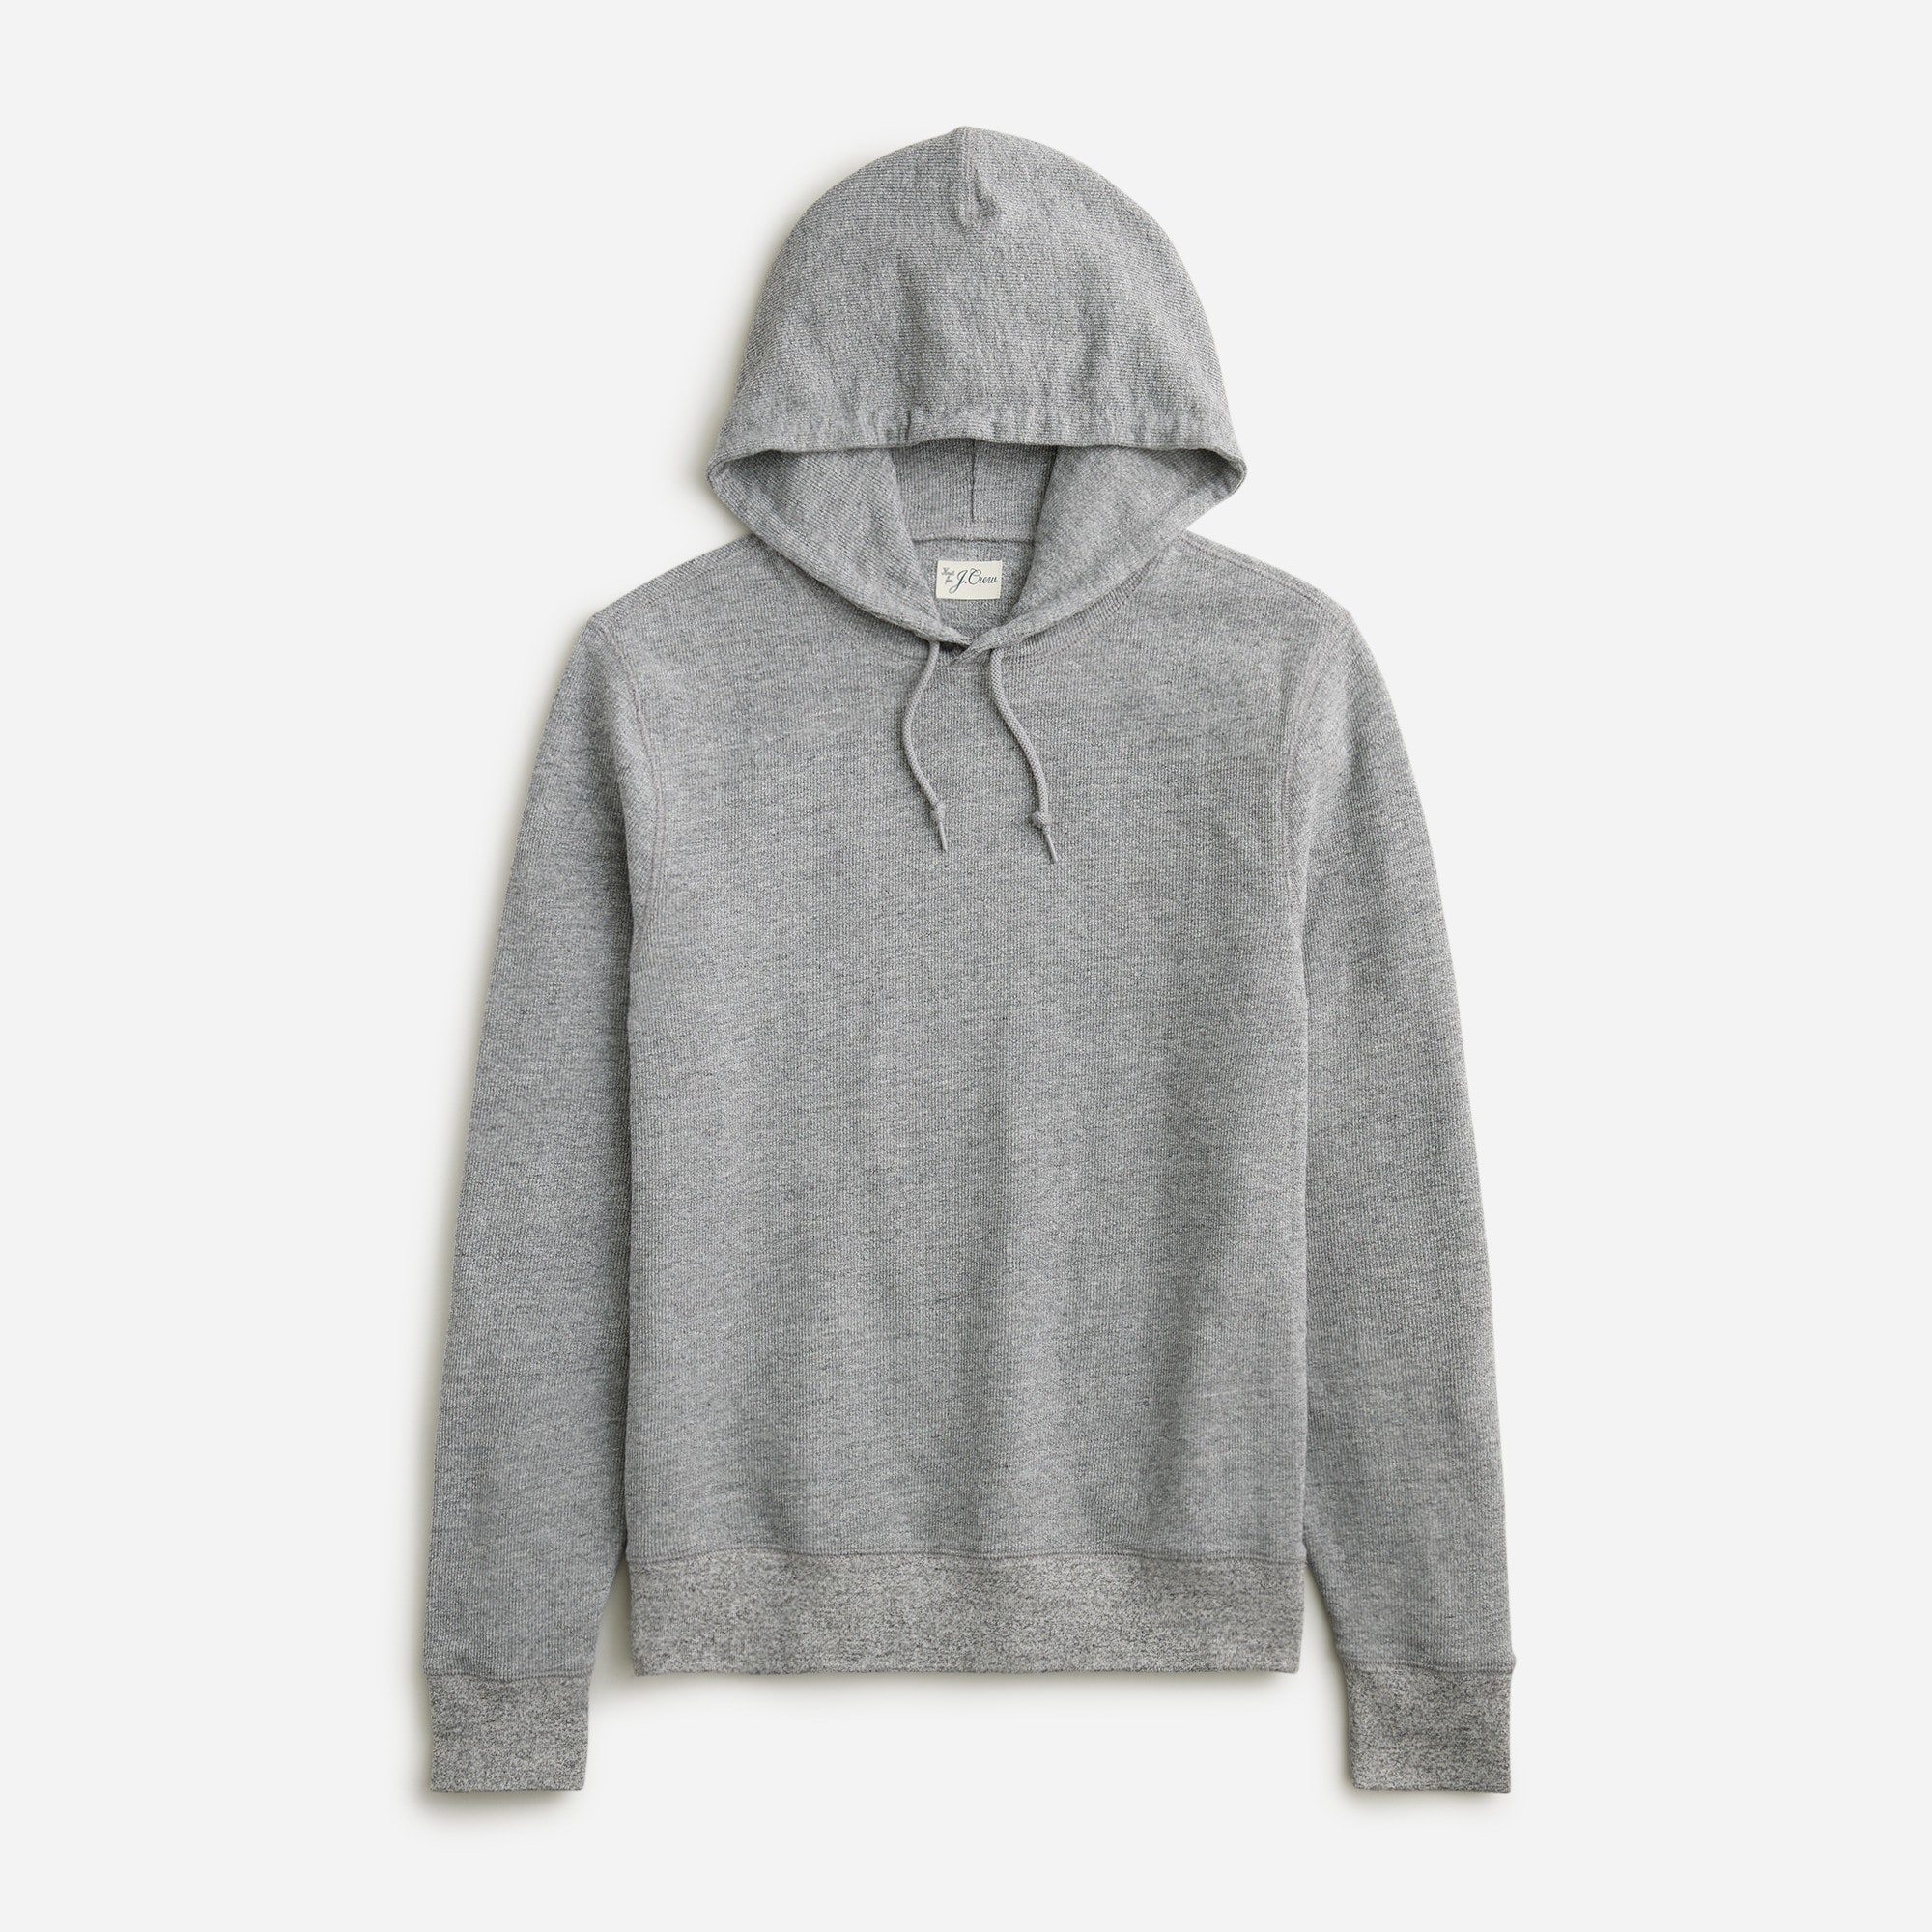  Textured sweater-tee hoodie